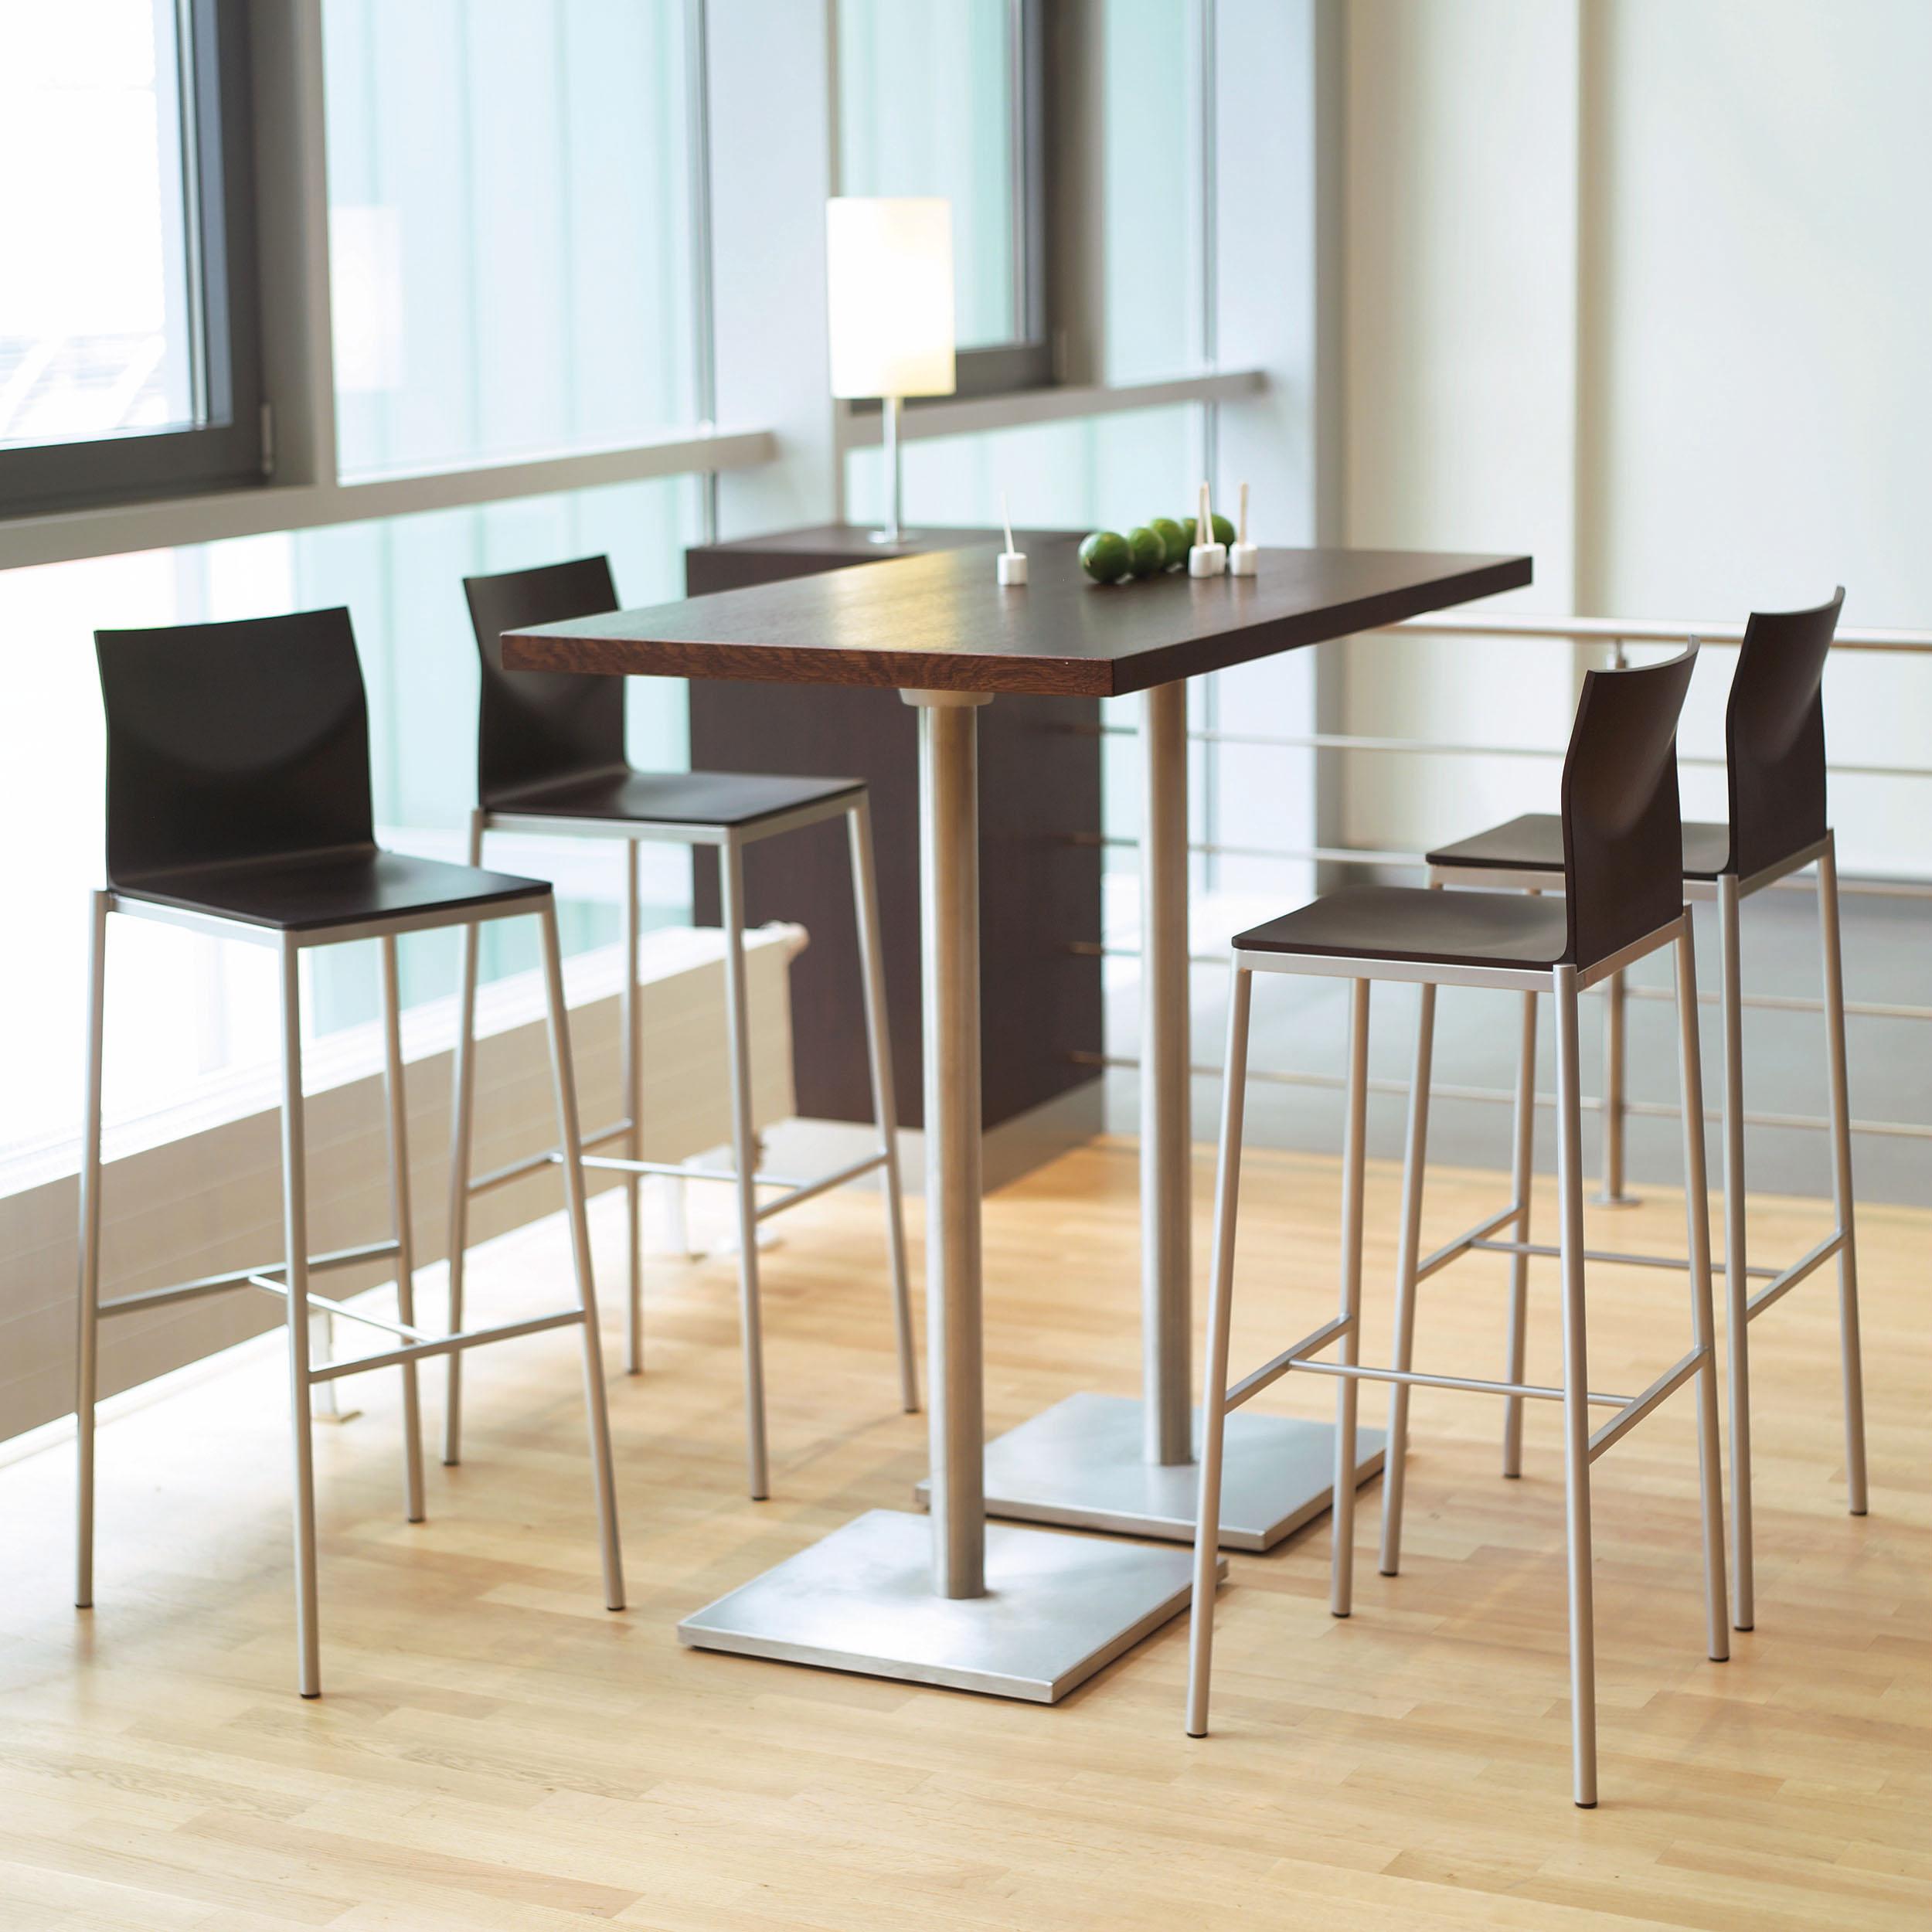 Ein Designkonzept - viele Prototypen: Ob konventionelle Stühle, Katilever oder Barhocker inklusive Luftfederung, GLOOH bietet nicht nur eine große Auswahl und Komfort, sondern auch ein unverwechselbares Design. Kein Wunder, dass GLOOH bereits